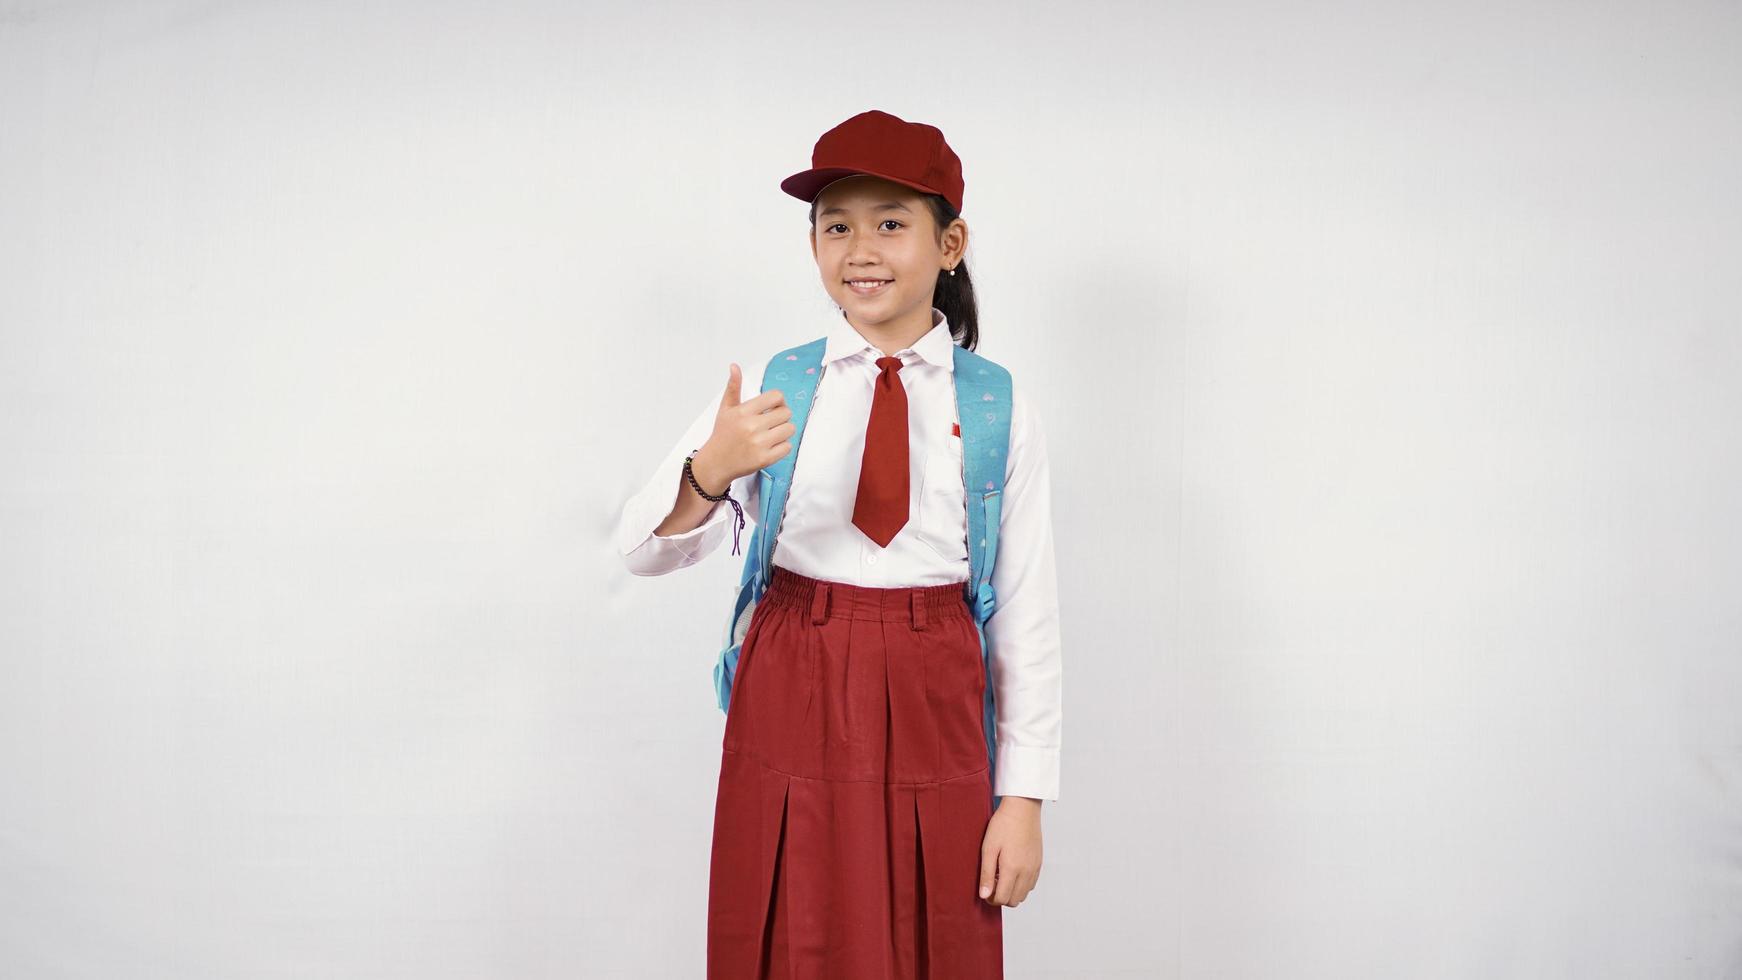 ragazza asiatica della scuola elementare pronta per andare isolata su fondo bianco foto